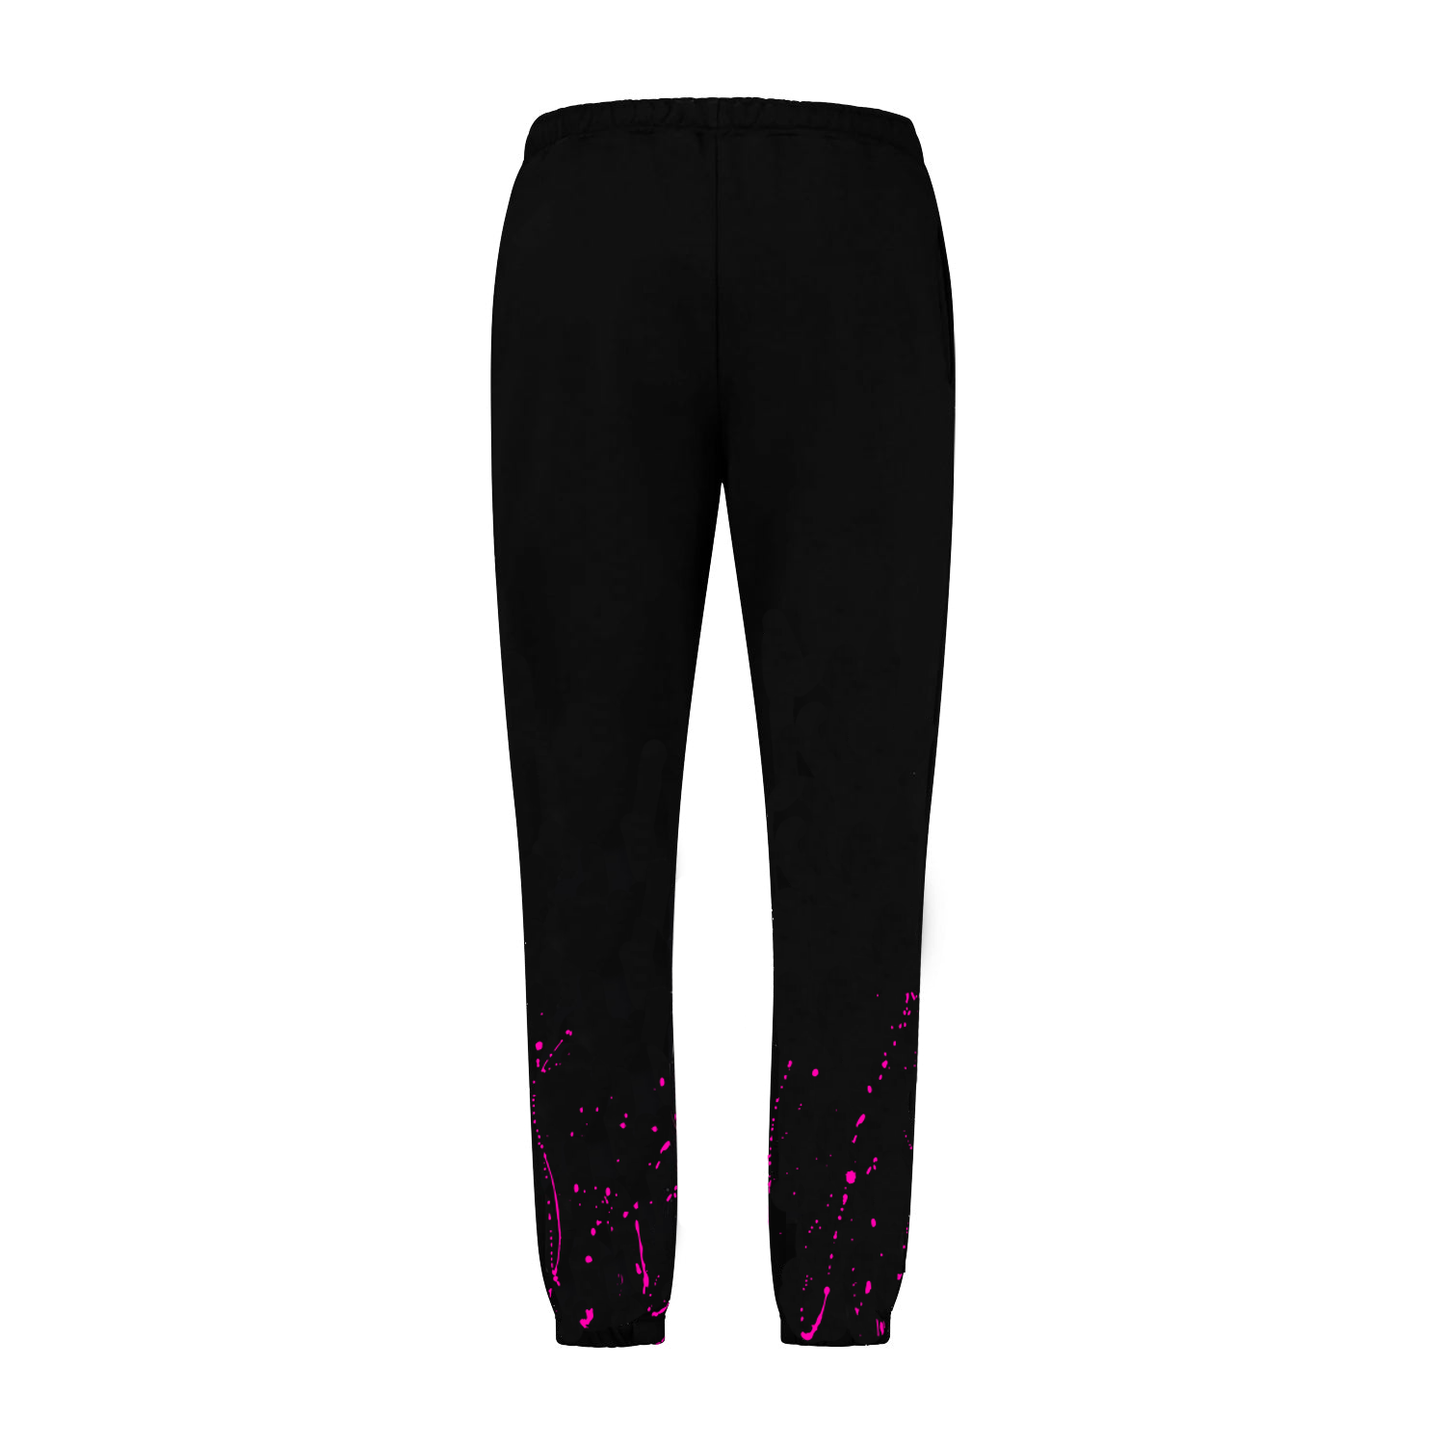 "Splatter" Neon Pink Black Pants